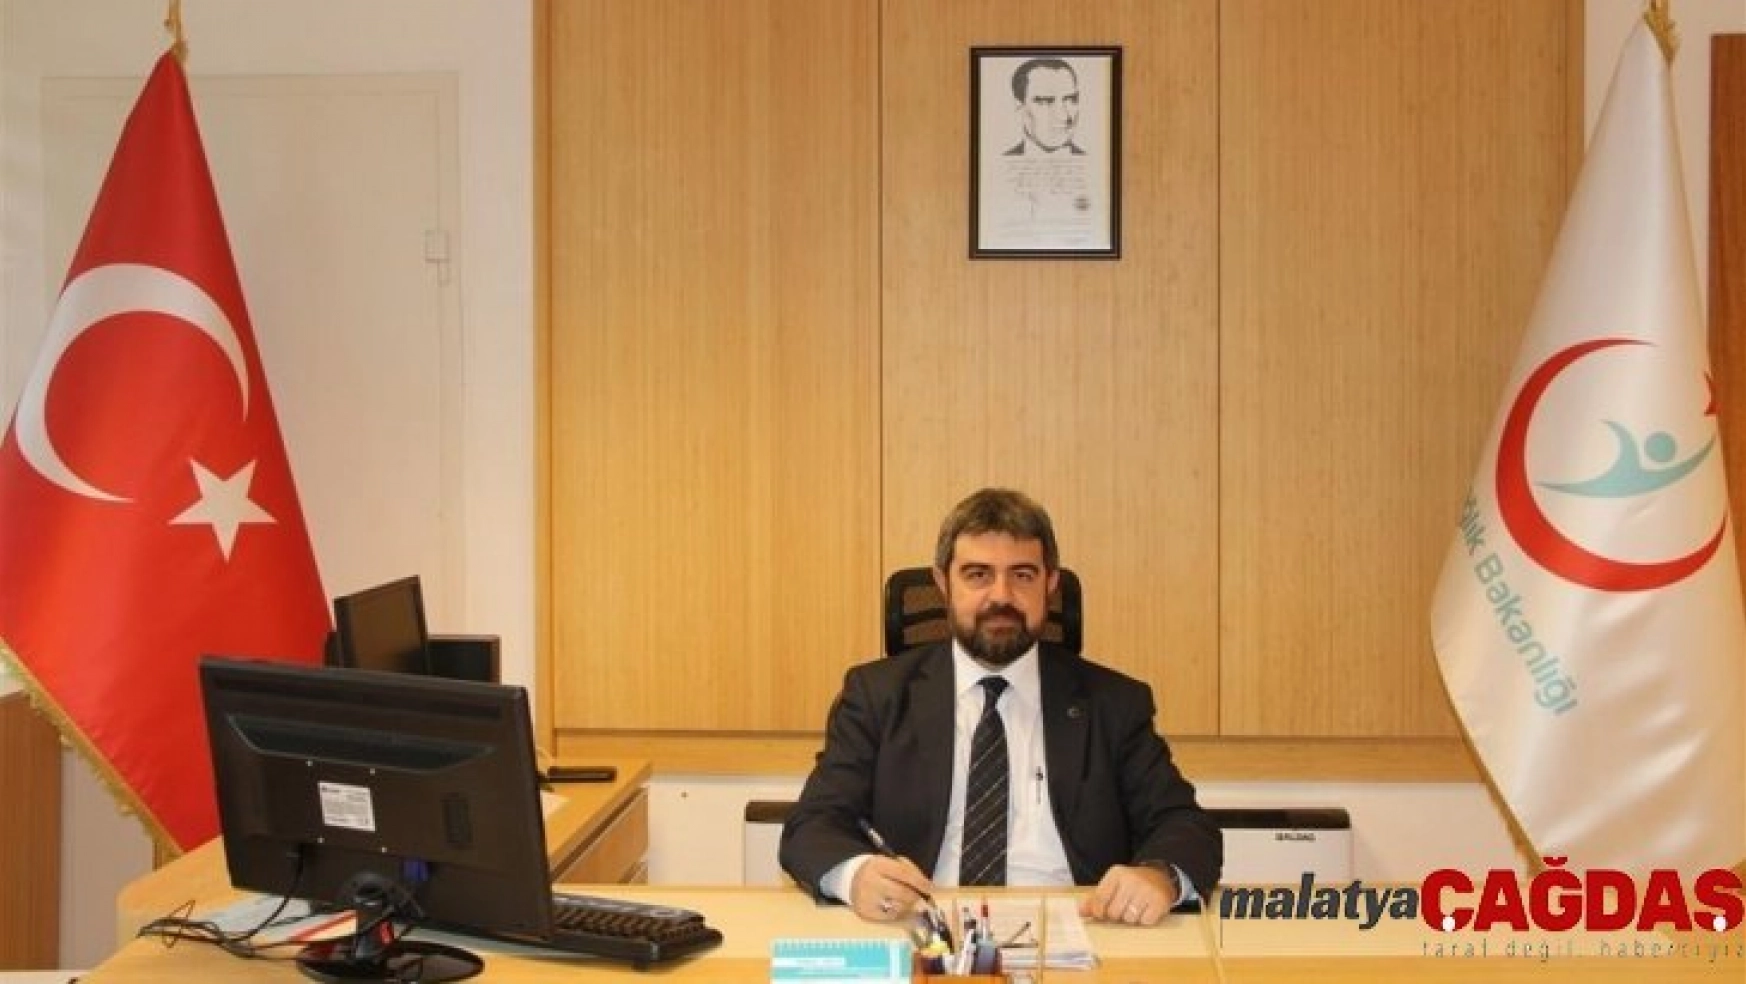 Bursa İl Sağlık Müdürlüğüne Uzm. Dr. Halim Ömer Kaşıkcı atandı